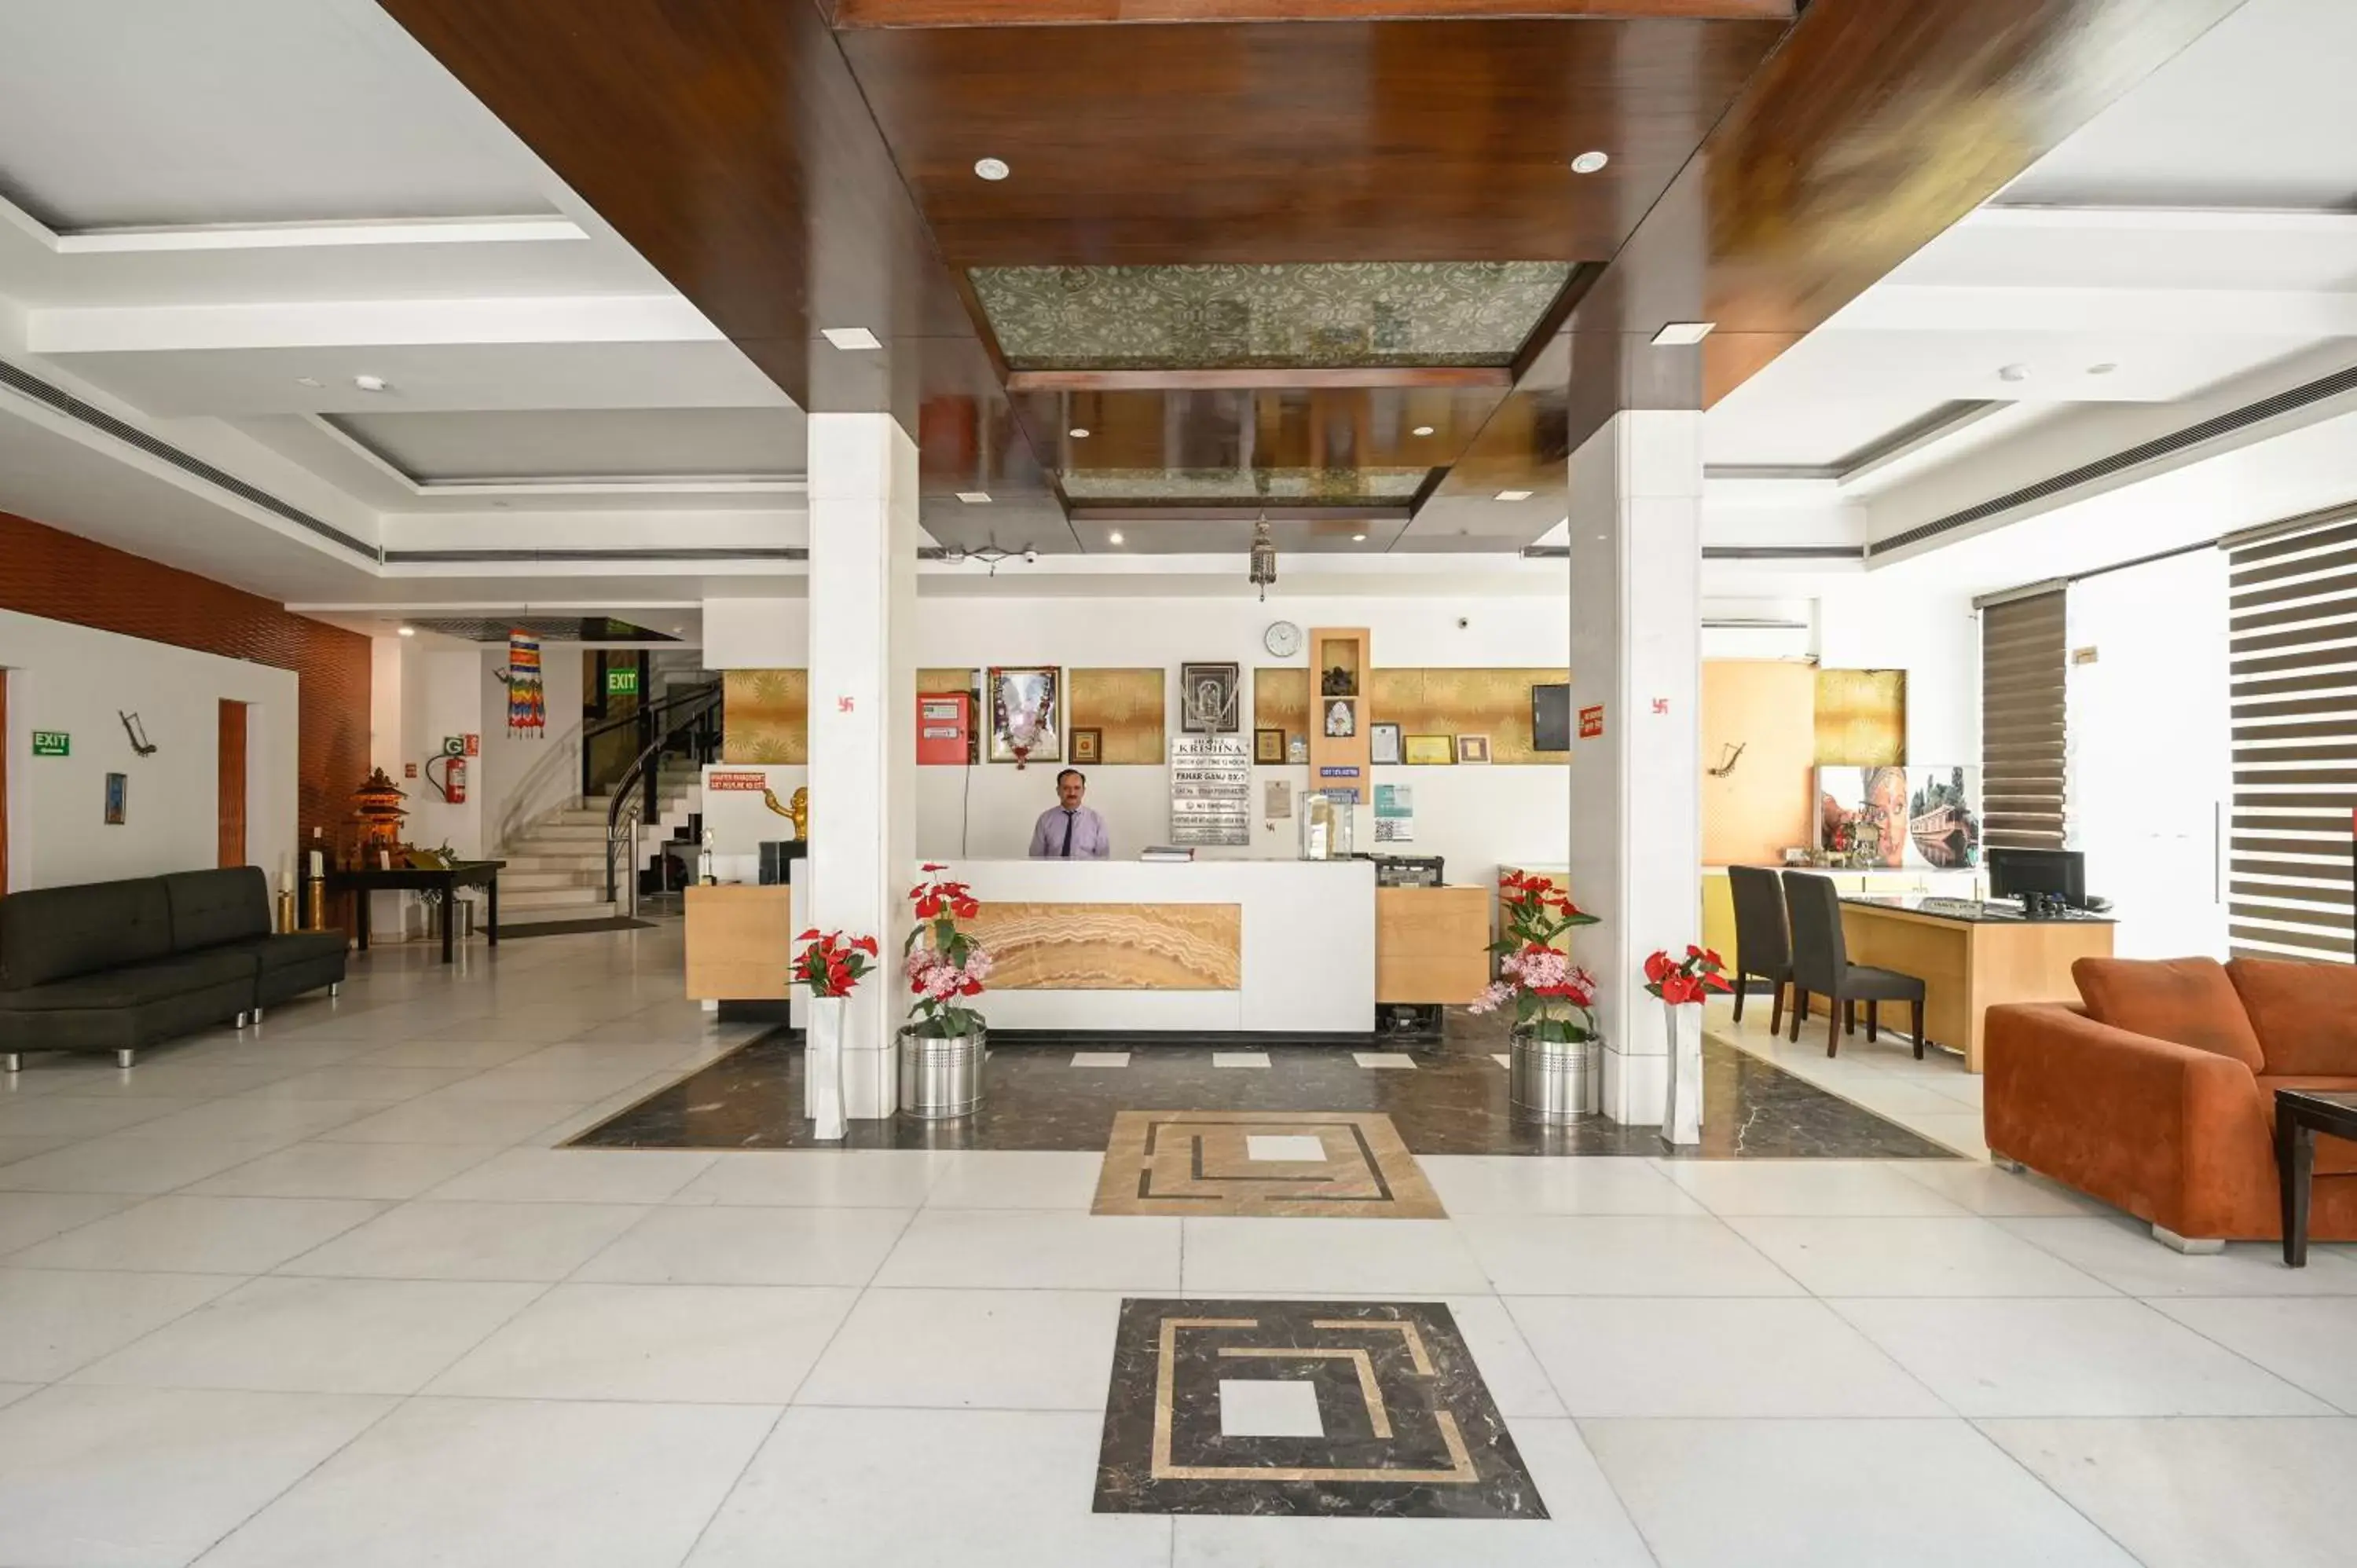 Lobby or reception, Lobby/Reception in Hotel Krishna - By RCG Hotels